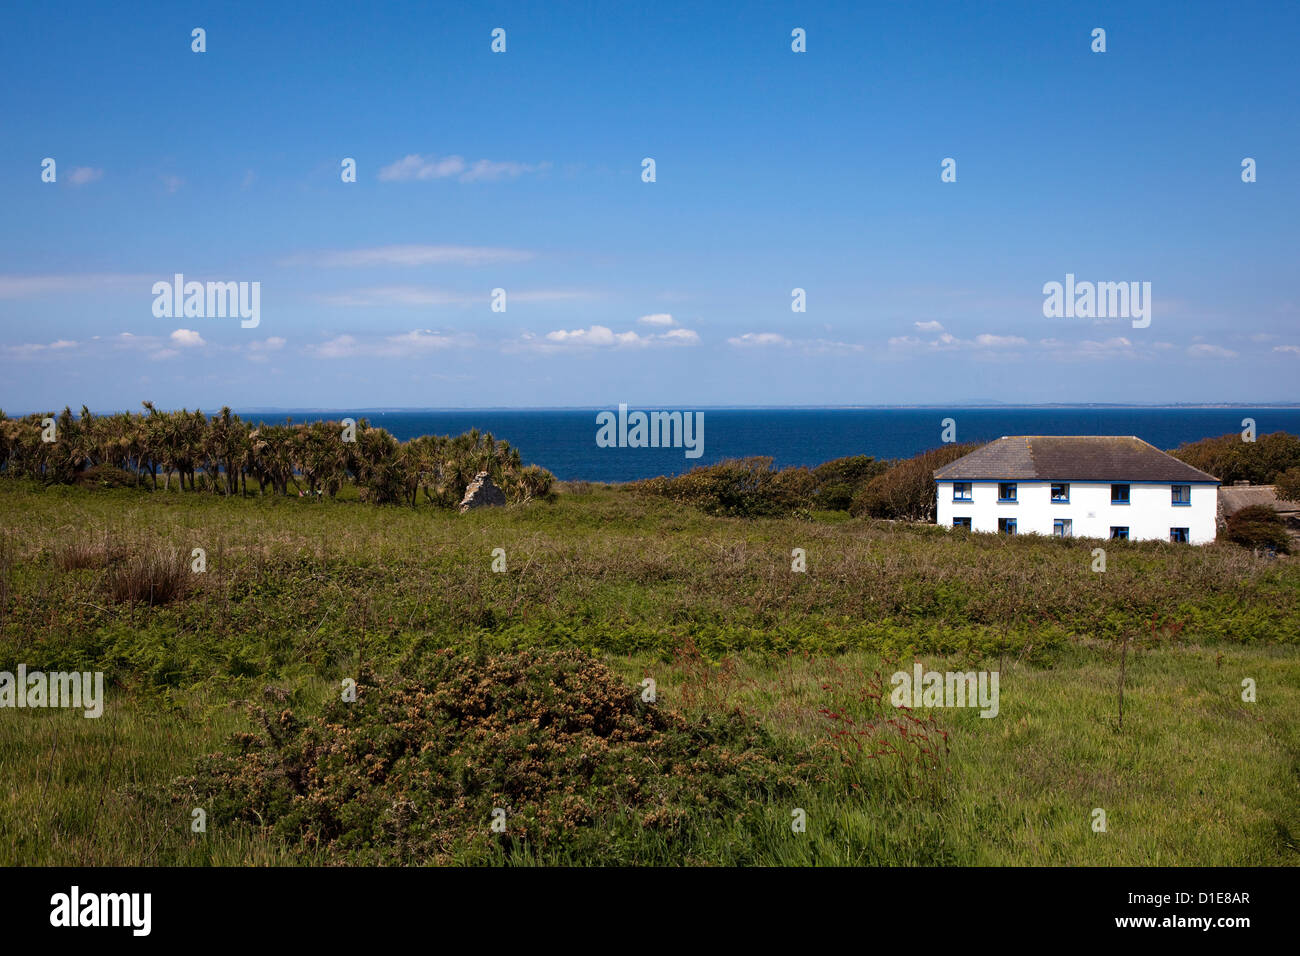 Das Haus des Prinzen der Saltee Inseln, auf große Saltee vor der Küste von Co. Wexford, Irland. Stockfoto